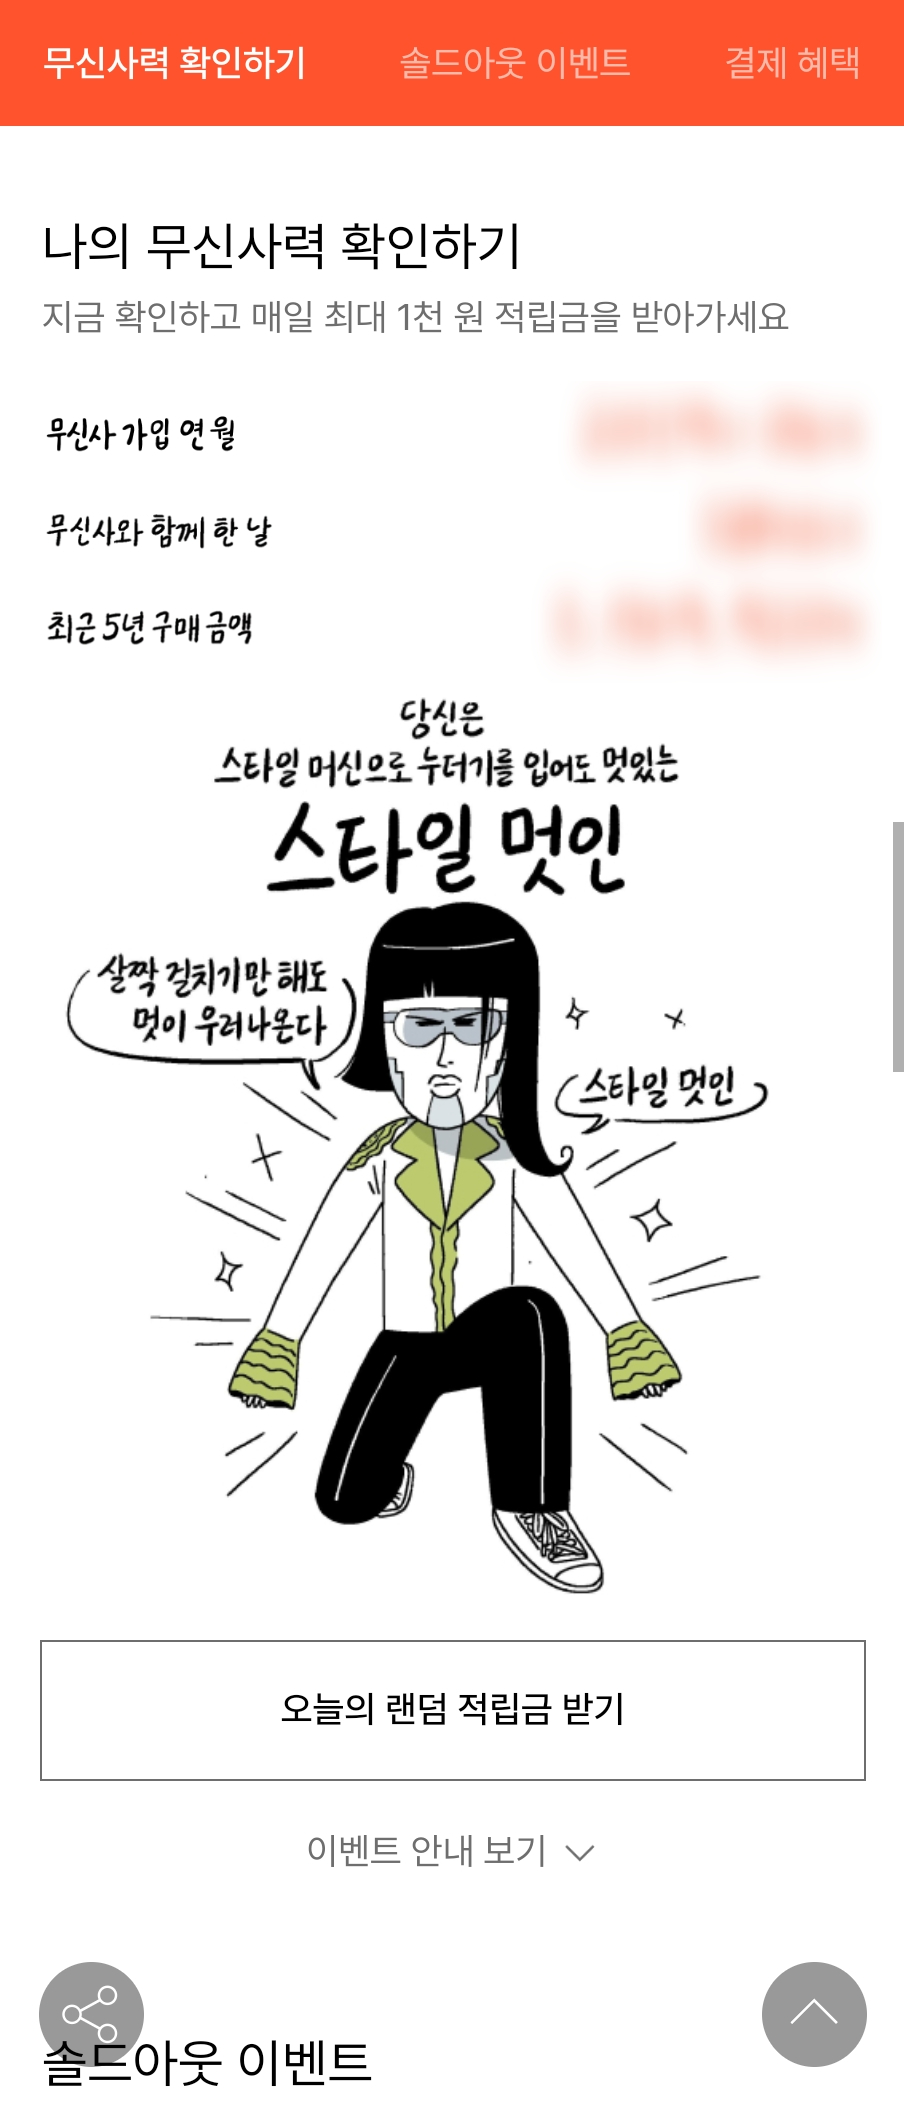 무신사 무진장 여름 블프 세일 혜택 총 정리 & 추천템 소개!